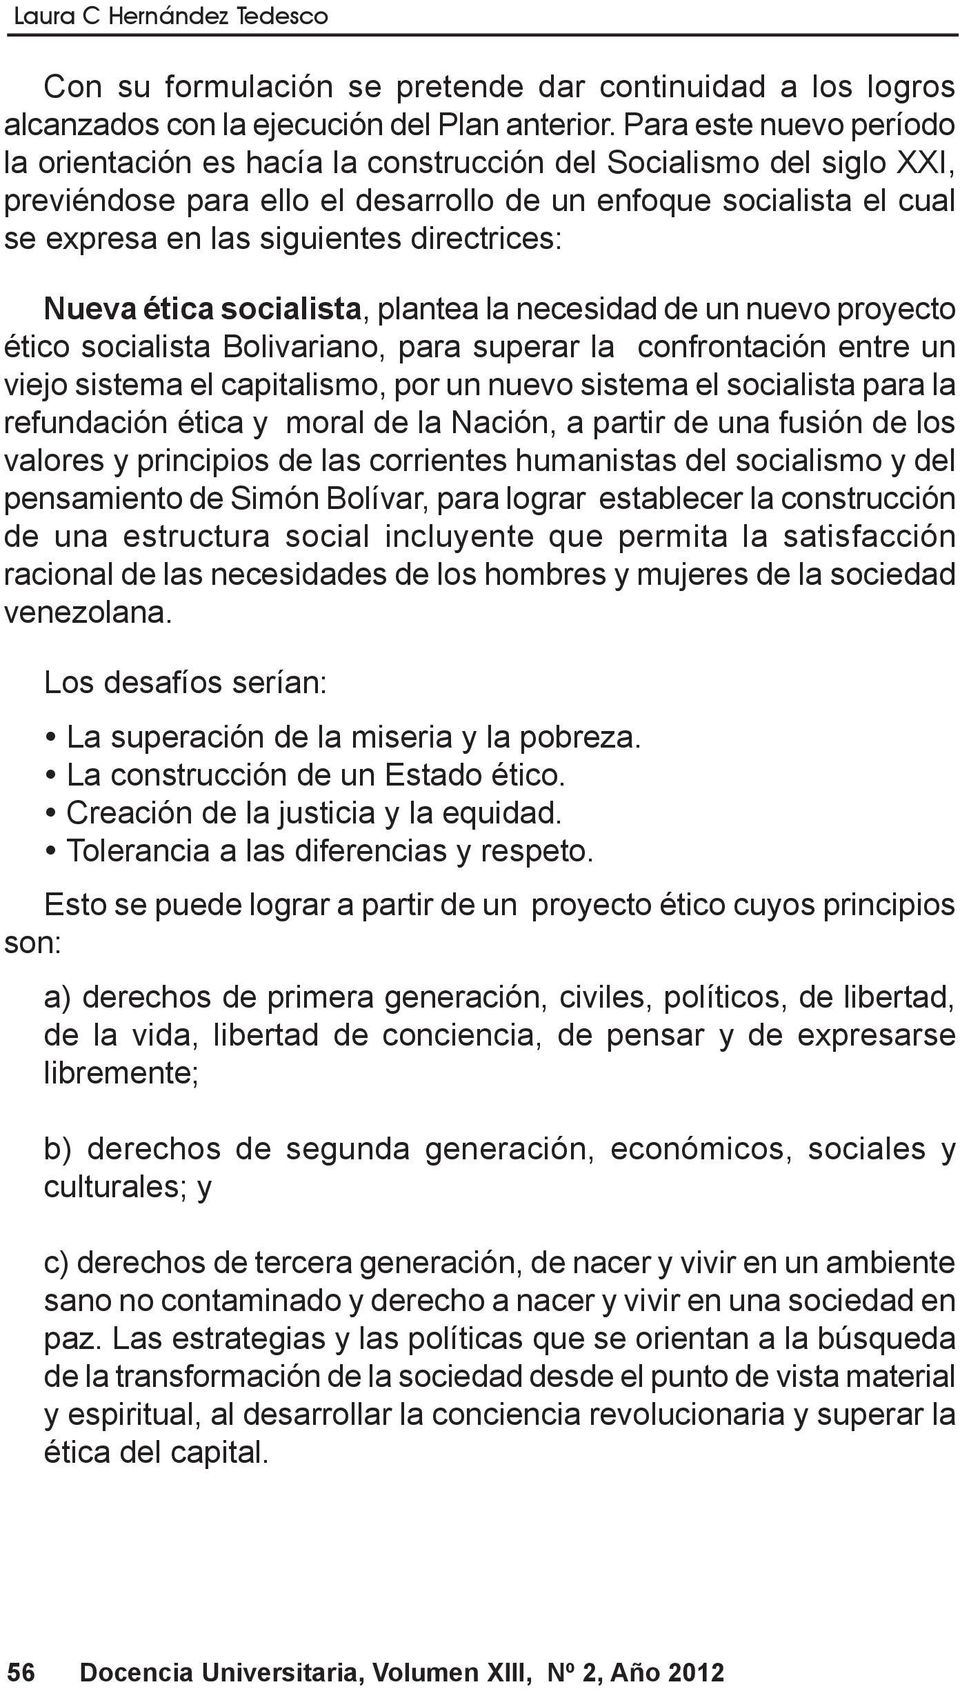 directrices: Nueva ética socialista, plantea la necesidad de un nuevo proyecto ético socialista Bolivariano, para superar la confrontación entre un viejo sistema el capitalismo, por un nuevo sistema